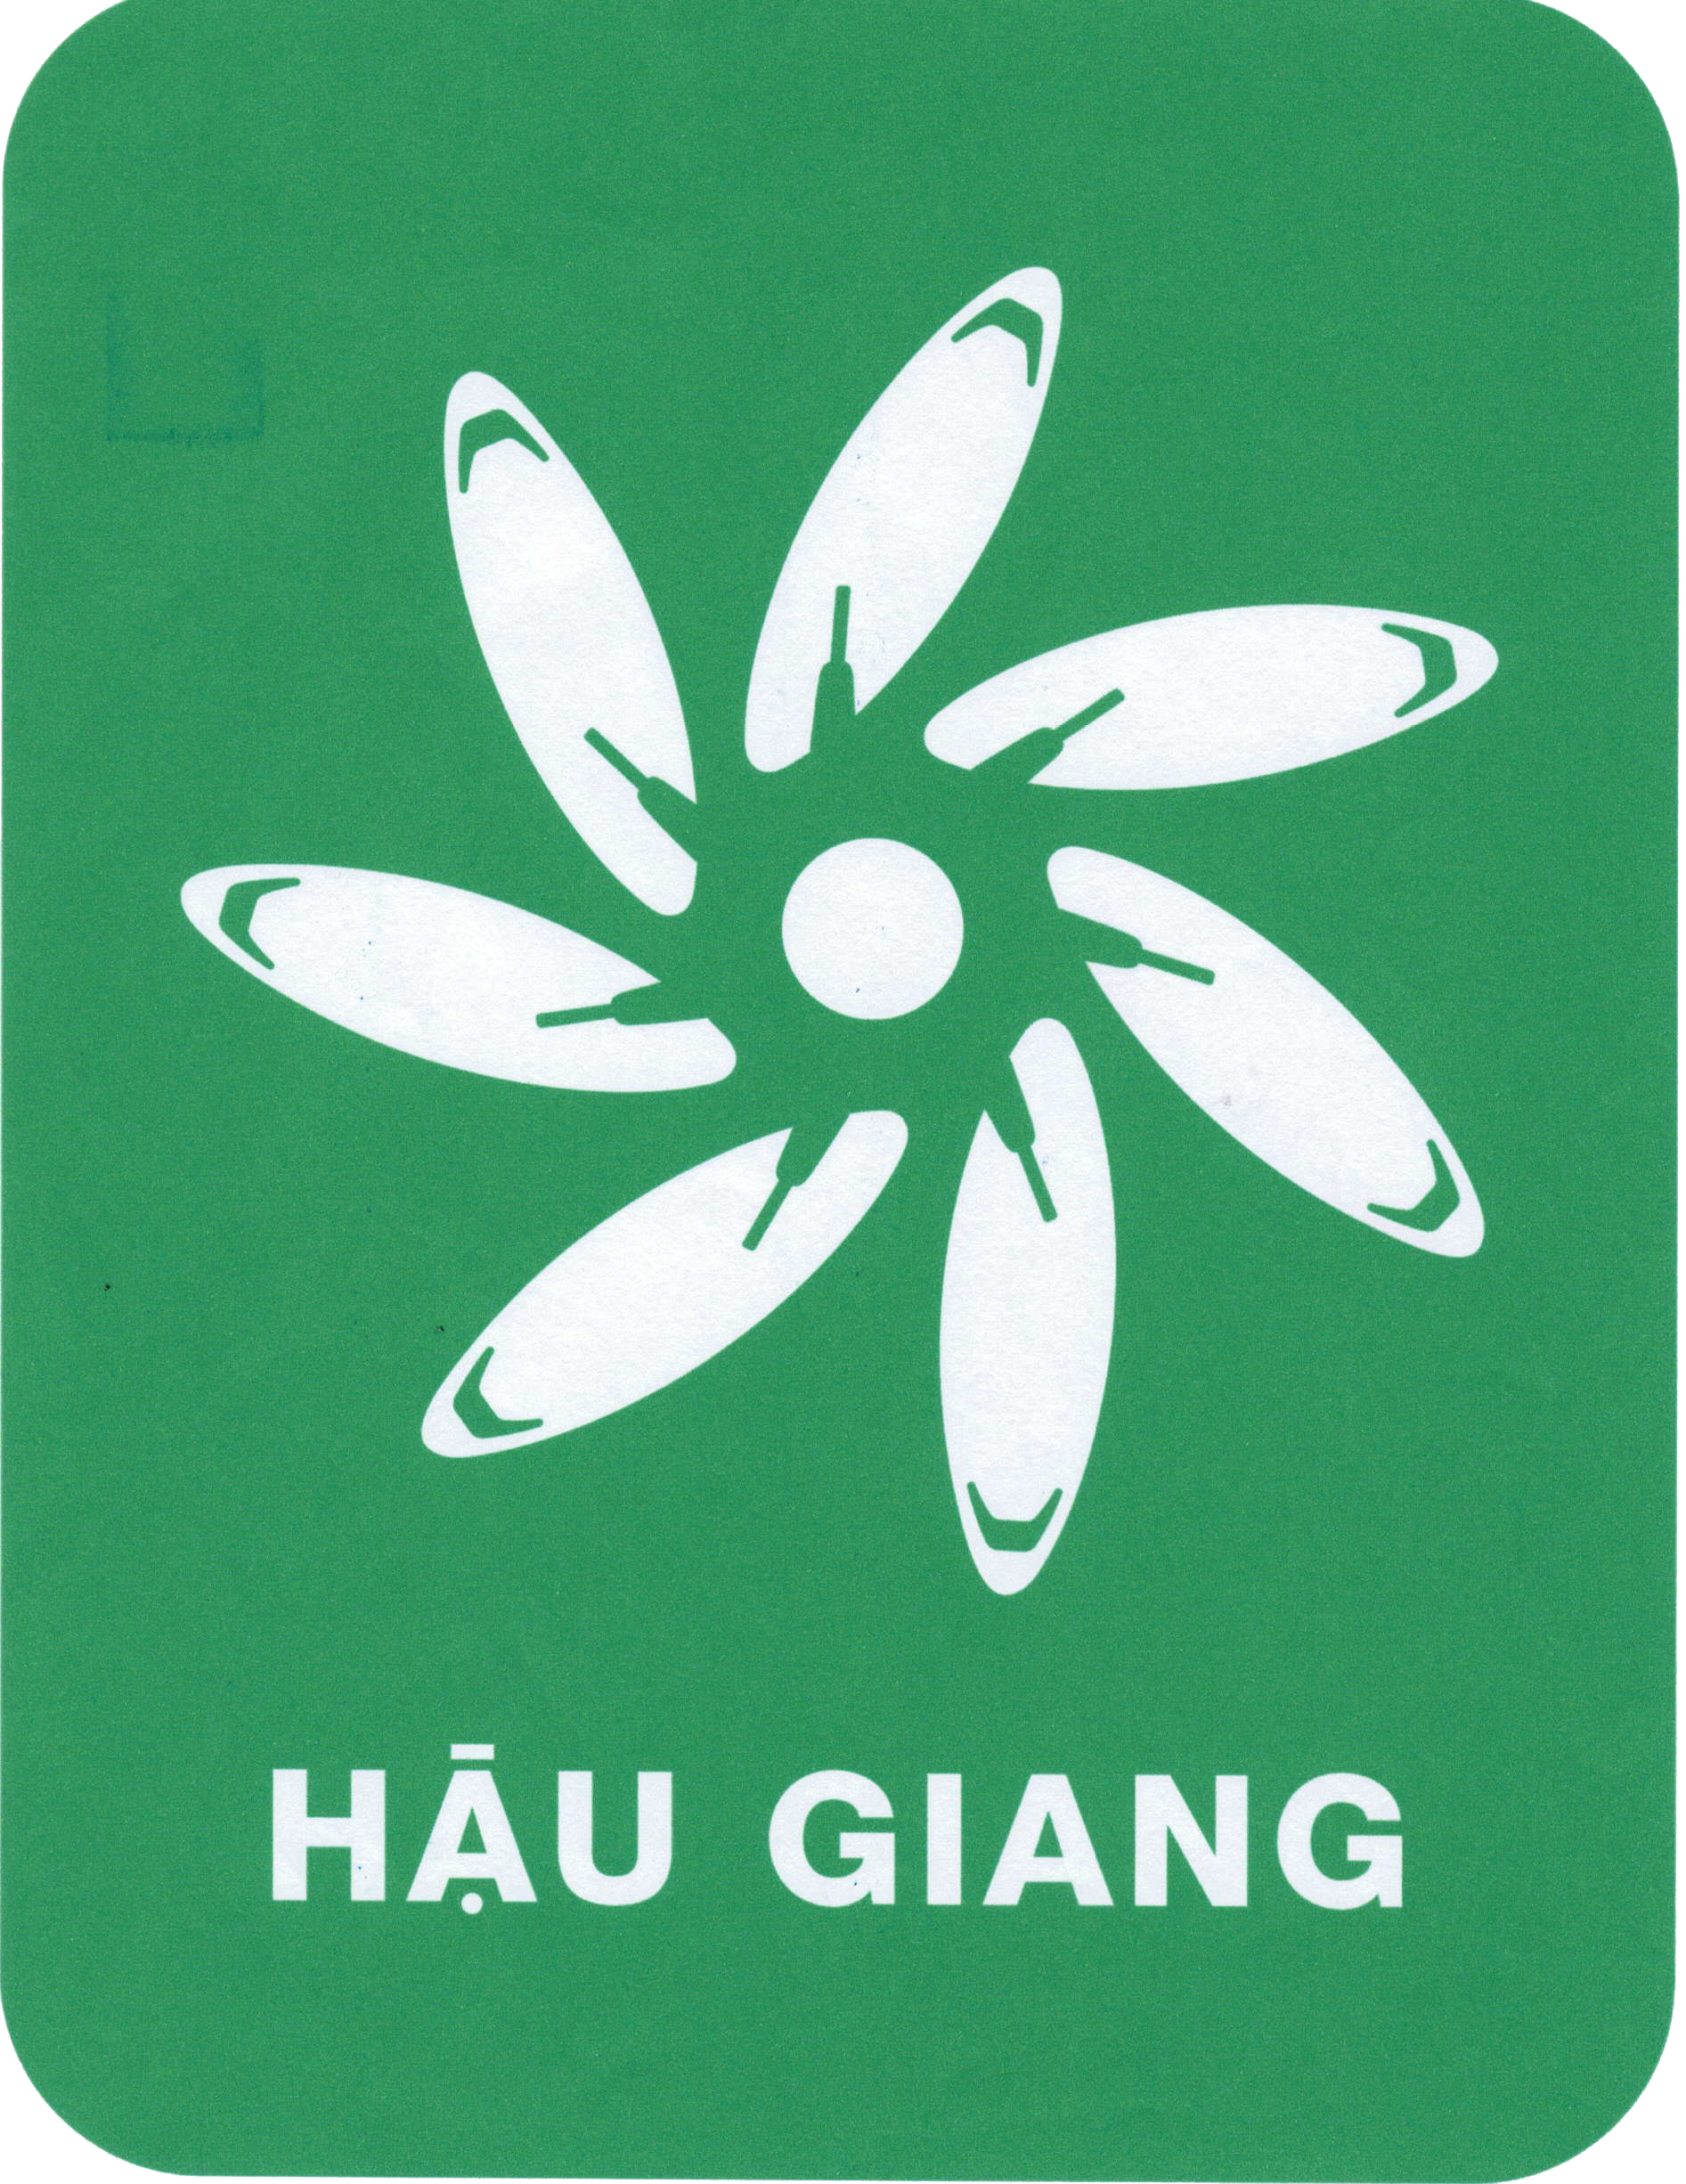 thông báo logo và biểu tượng linh vật của tỉnh Hậu Giang